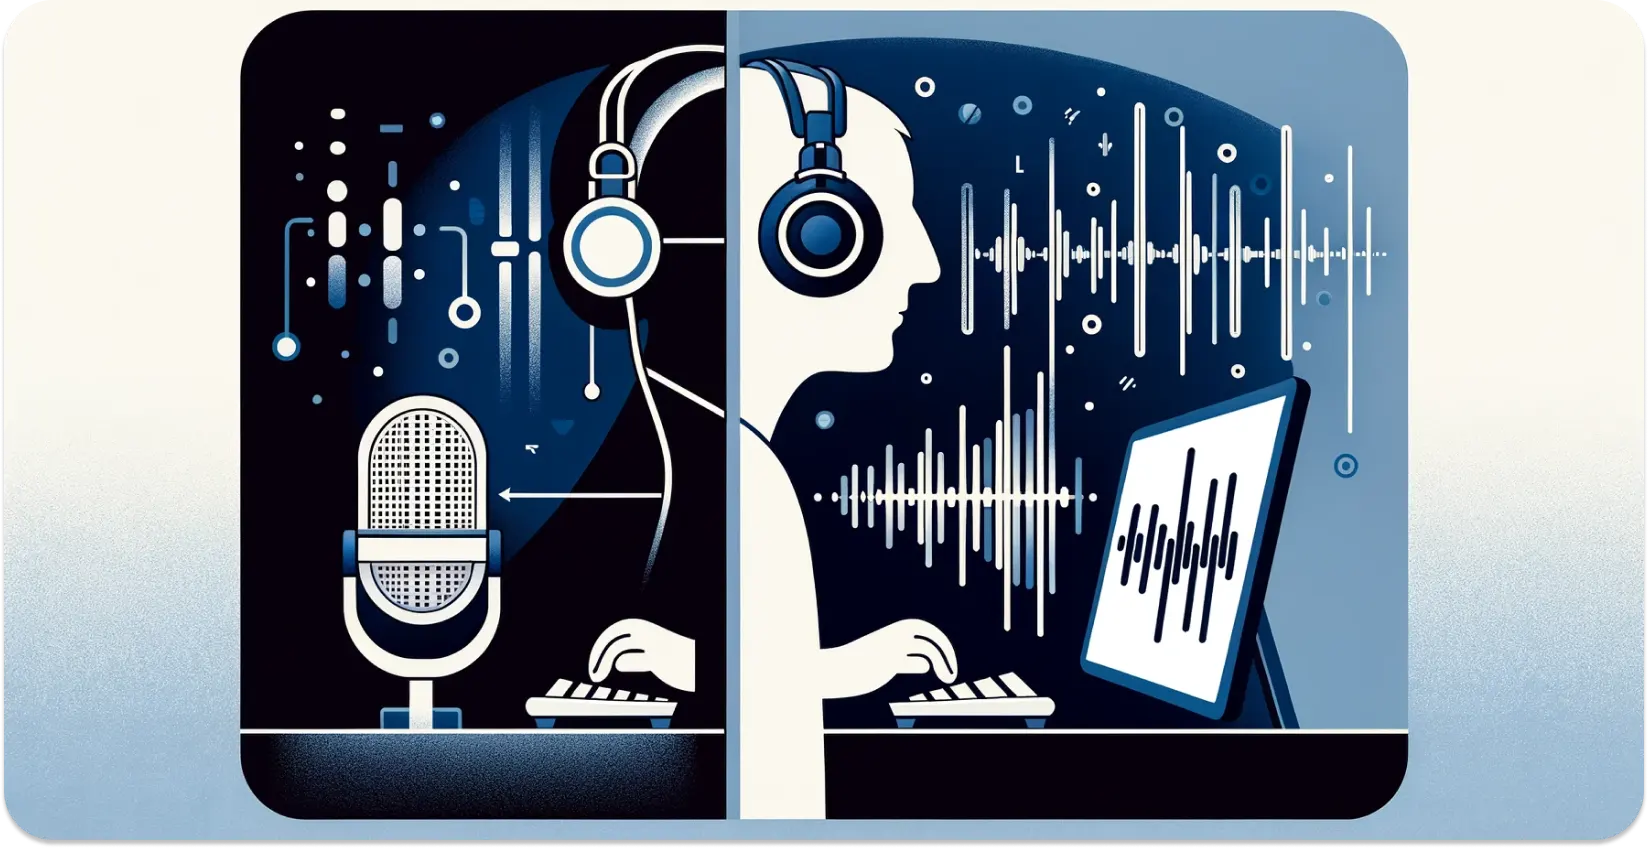 Egy fejhallgatóval rendelkező személy stilizált ábrázolása, aki hangot ír át egy táblagépről, vizuális hanghullámokkal.